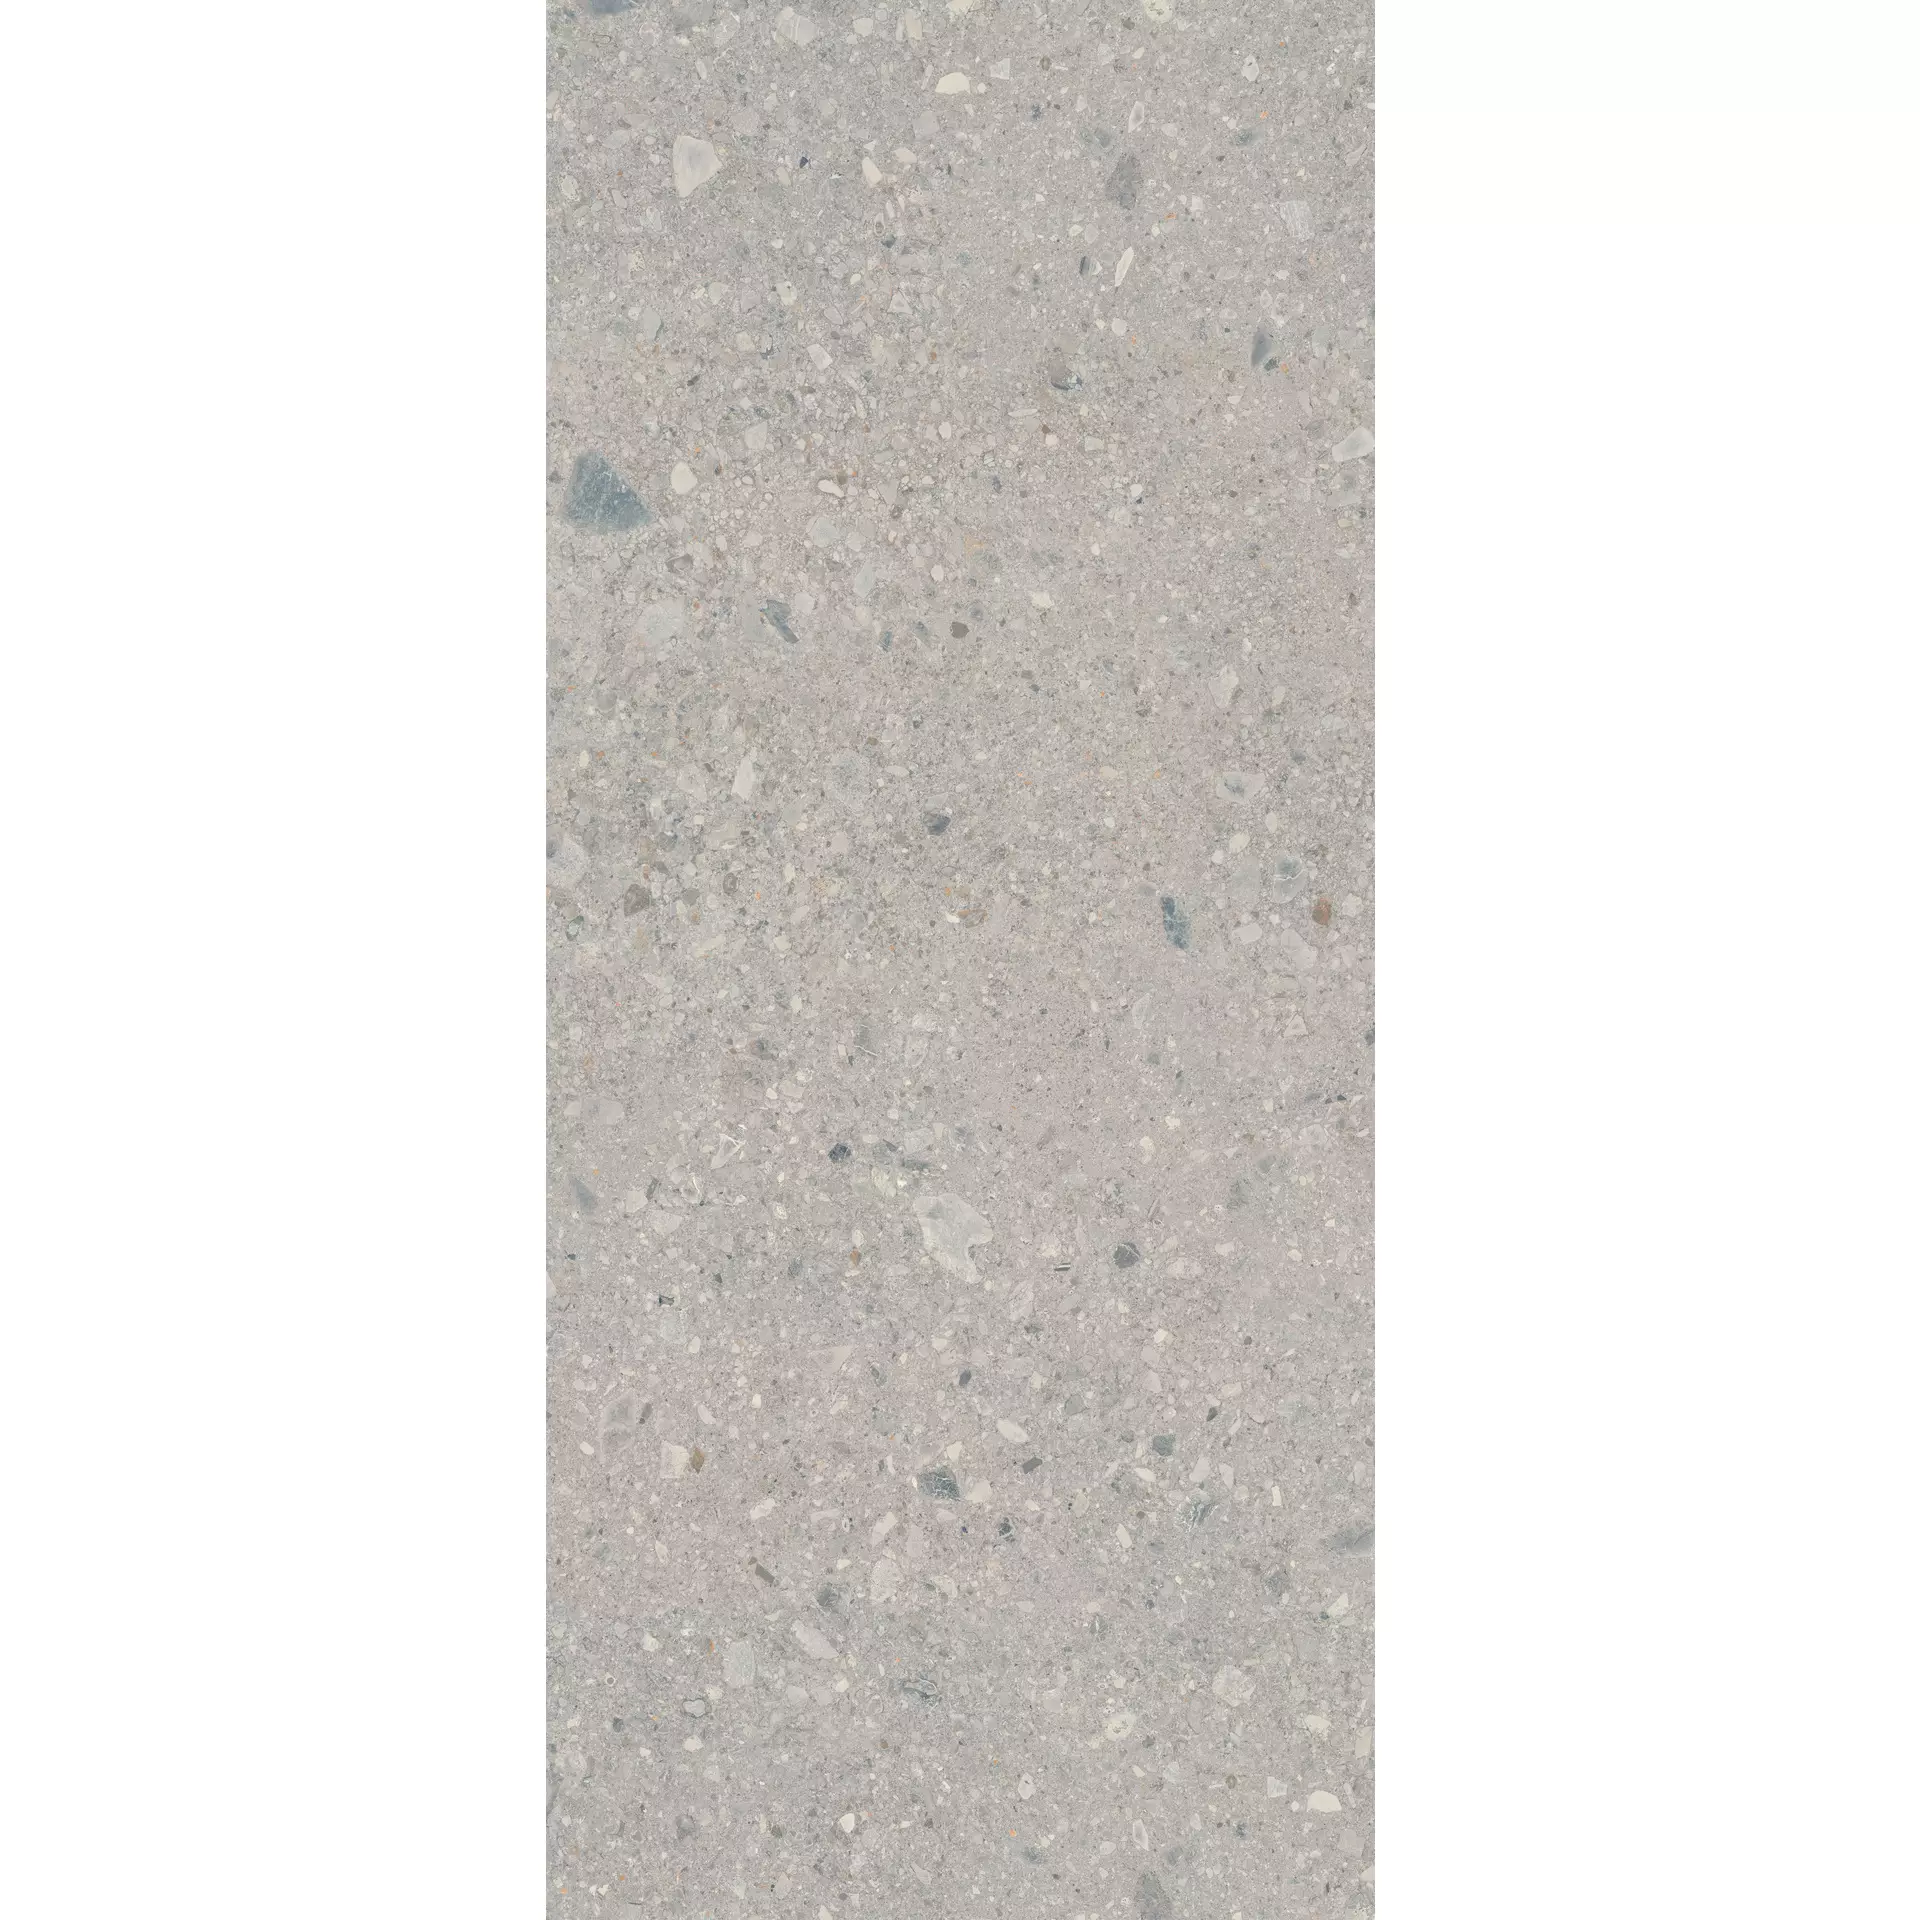 Marazzi Grande Stone Look Ceppo Di Gré Grey Naturale – Matt M9CW 120x278cm rectified 6mm